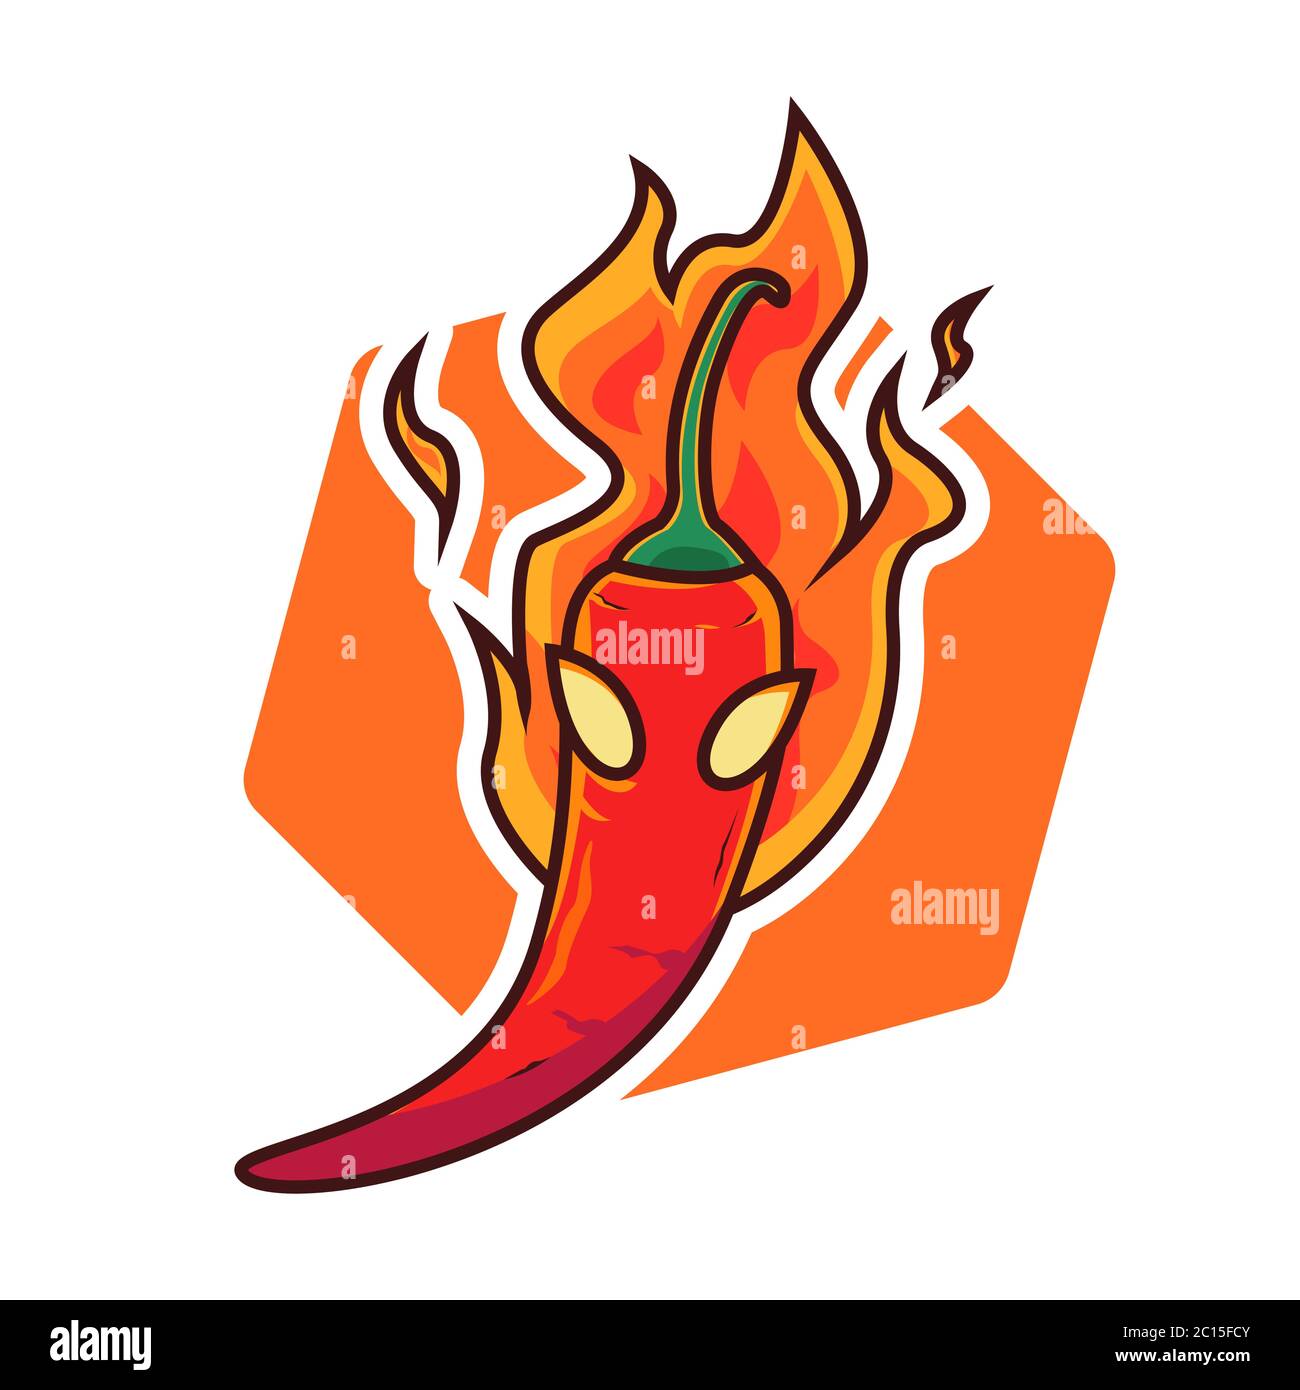 Chili cartoon logo design vector template Stock Vector